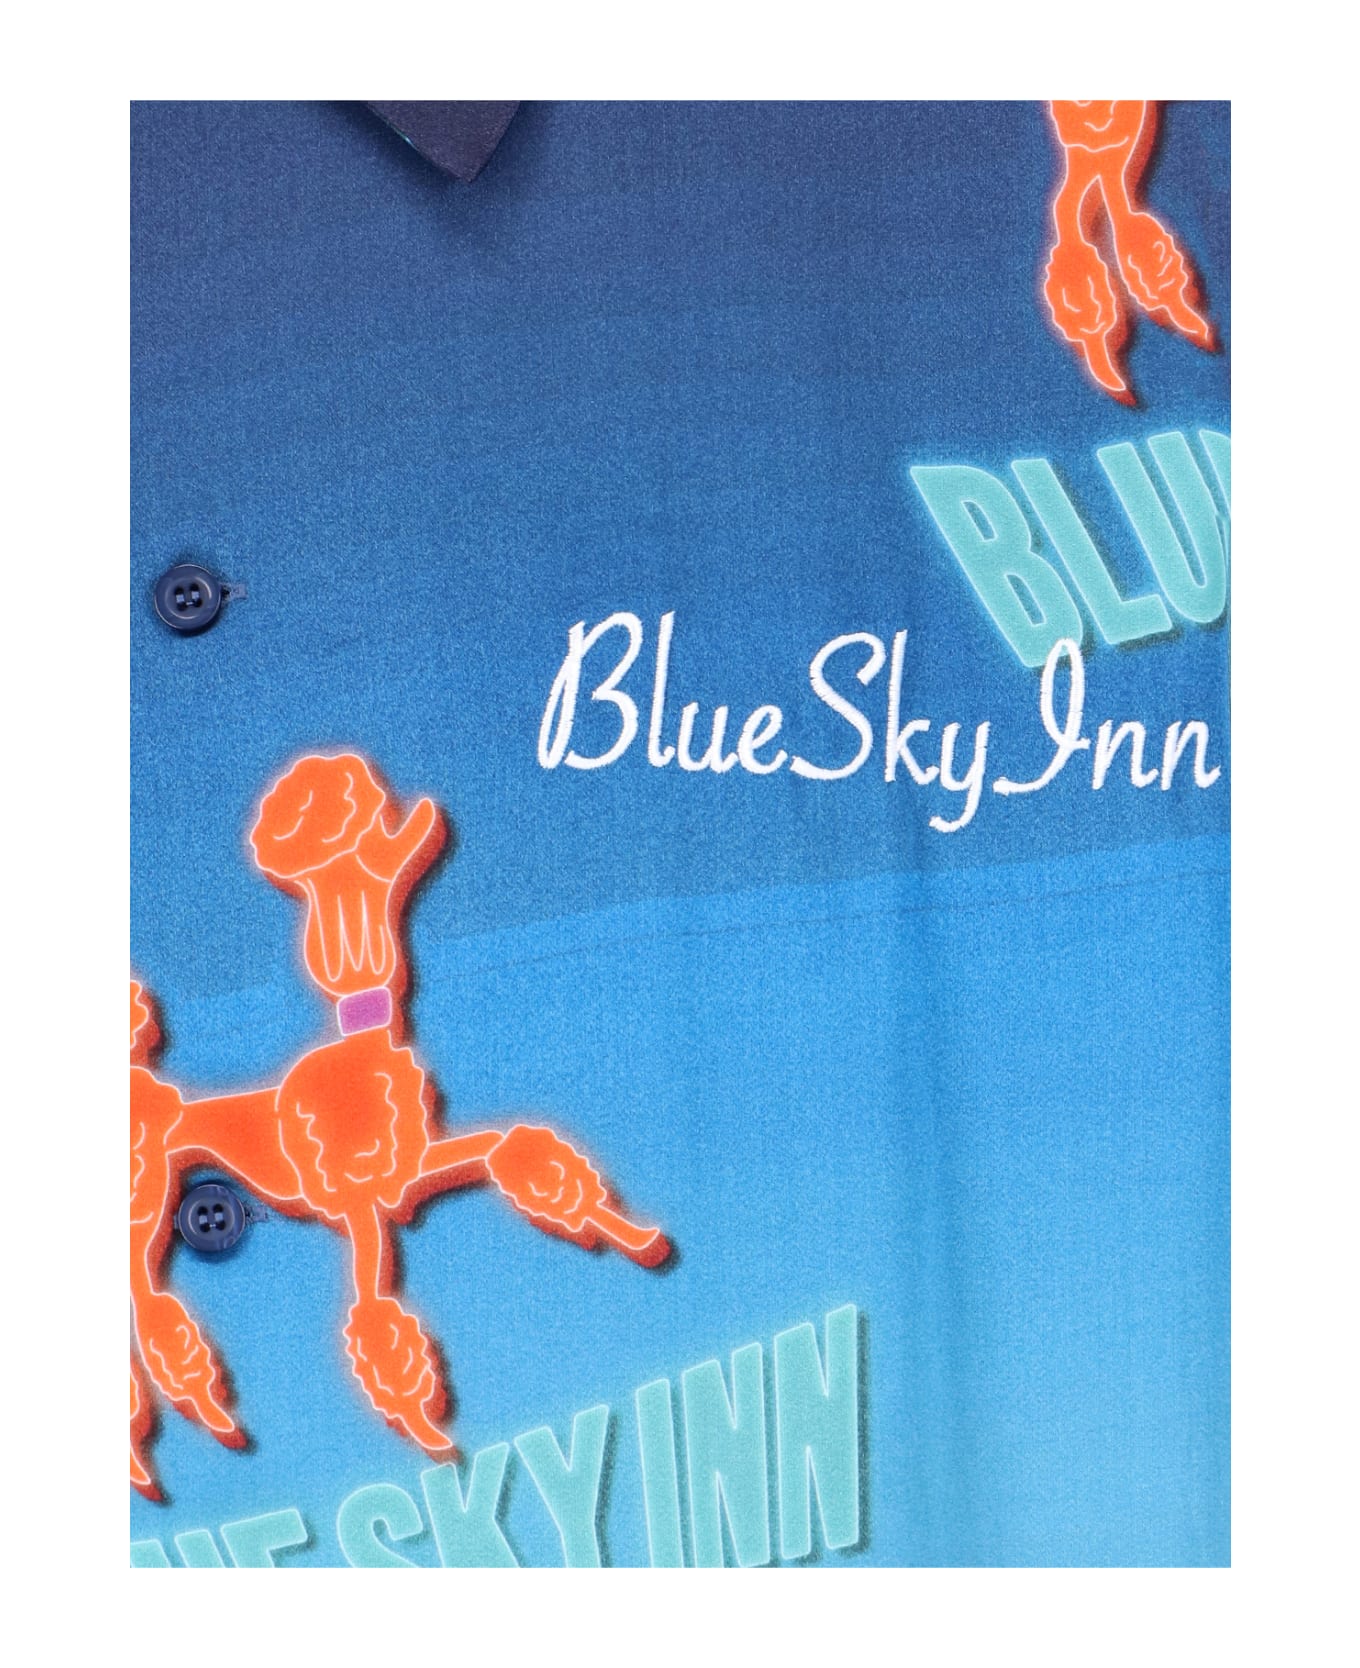 Blue Sky Inn Shirt - Light blue